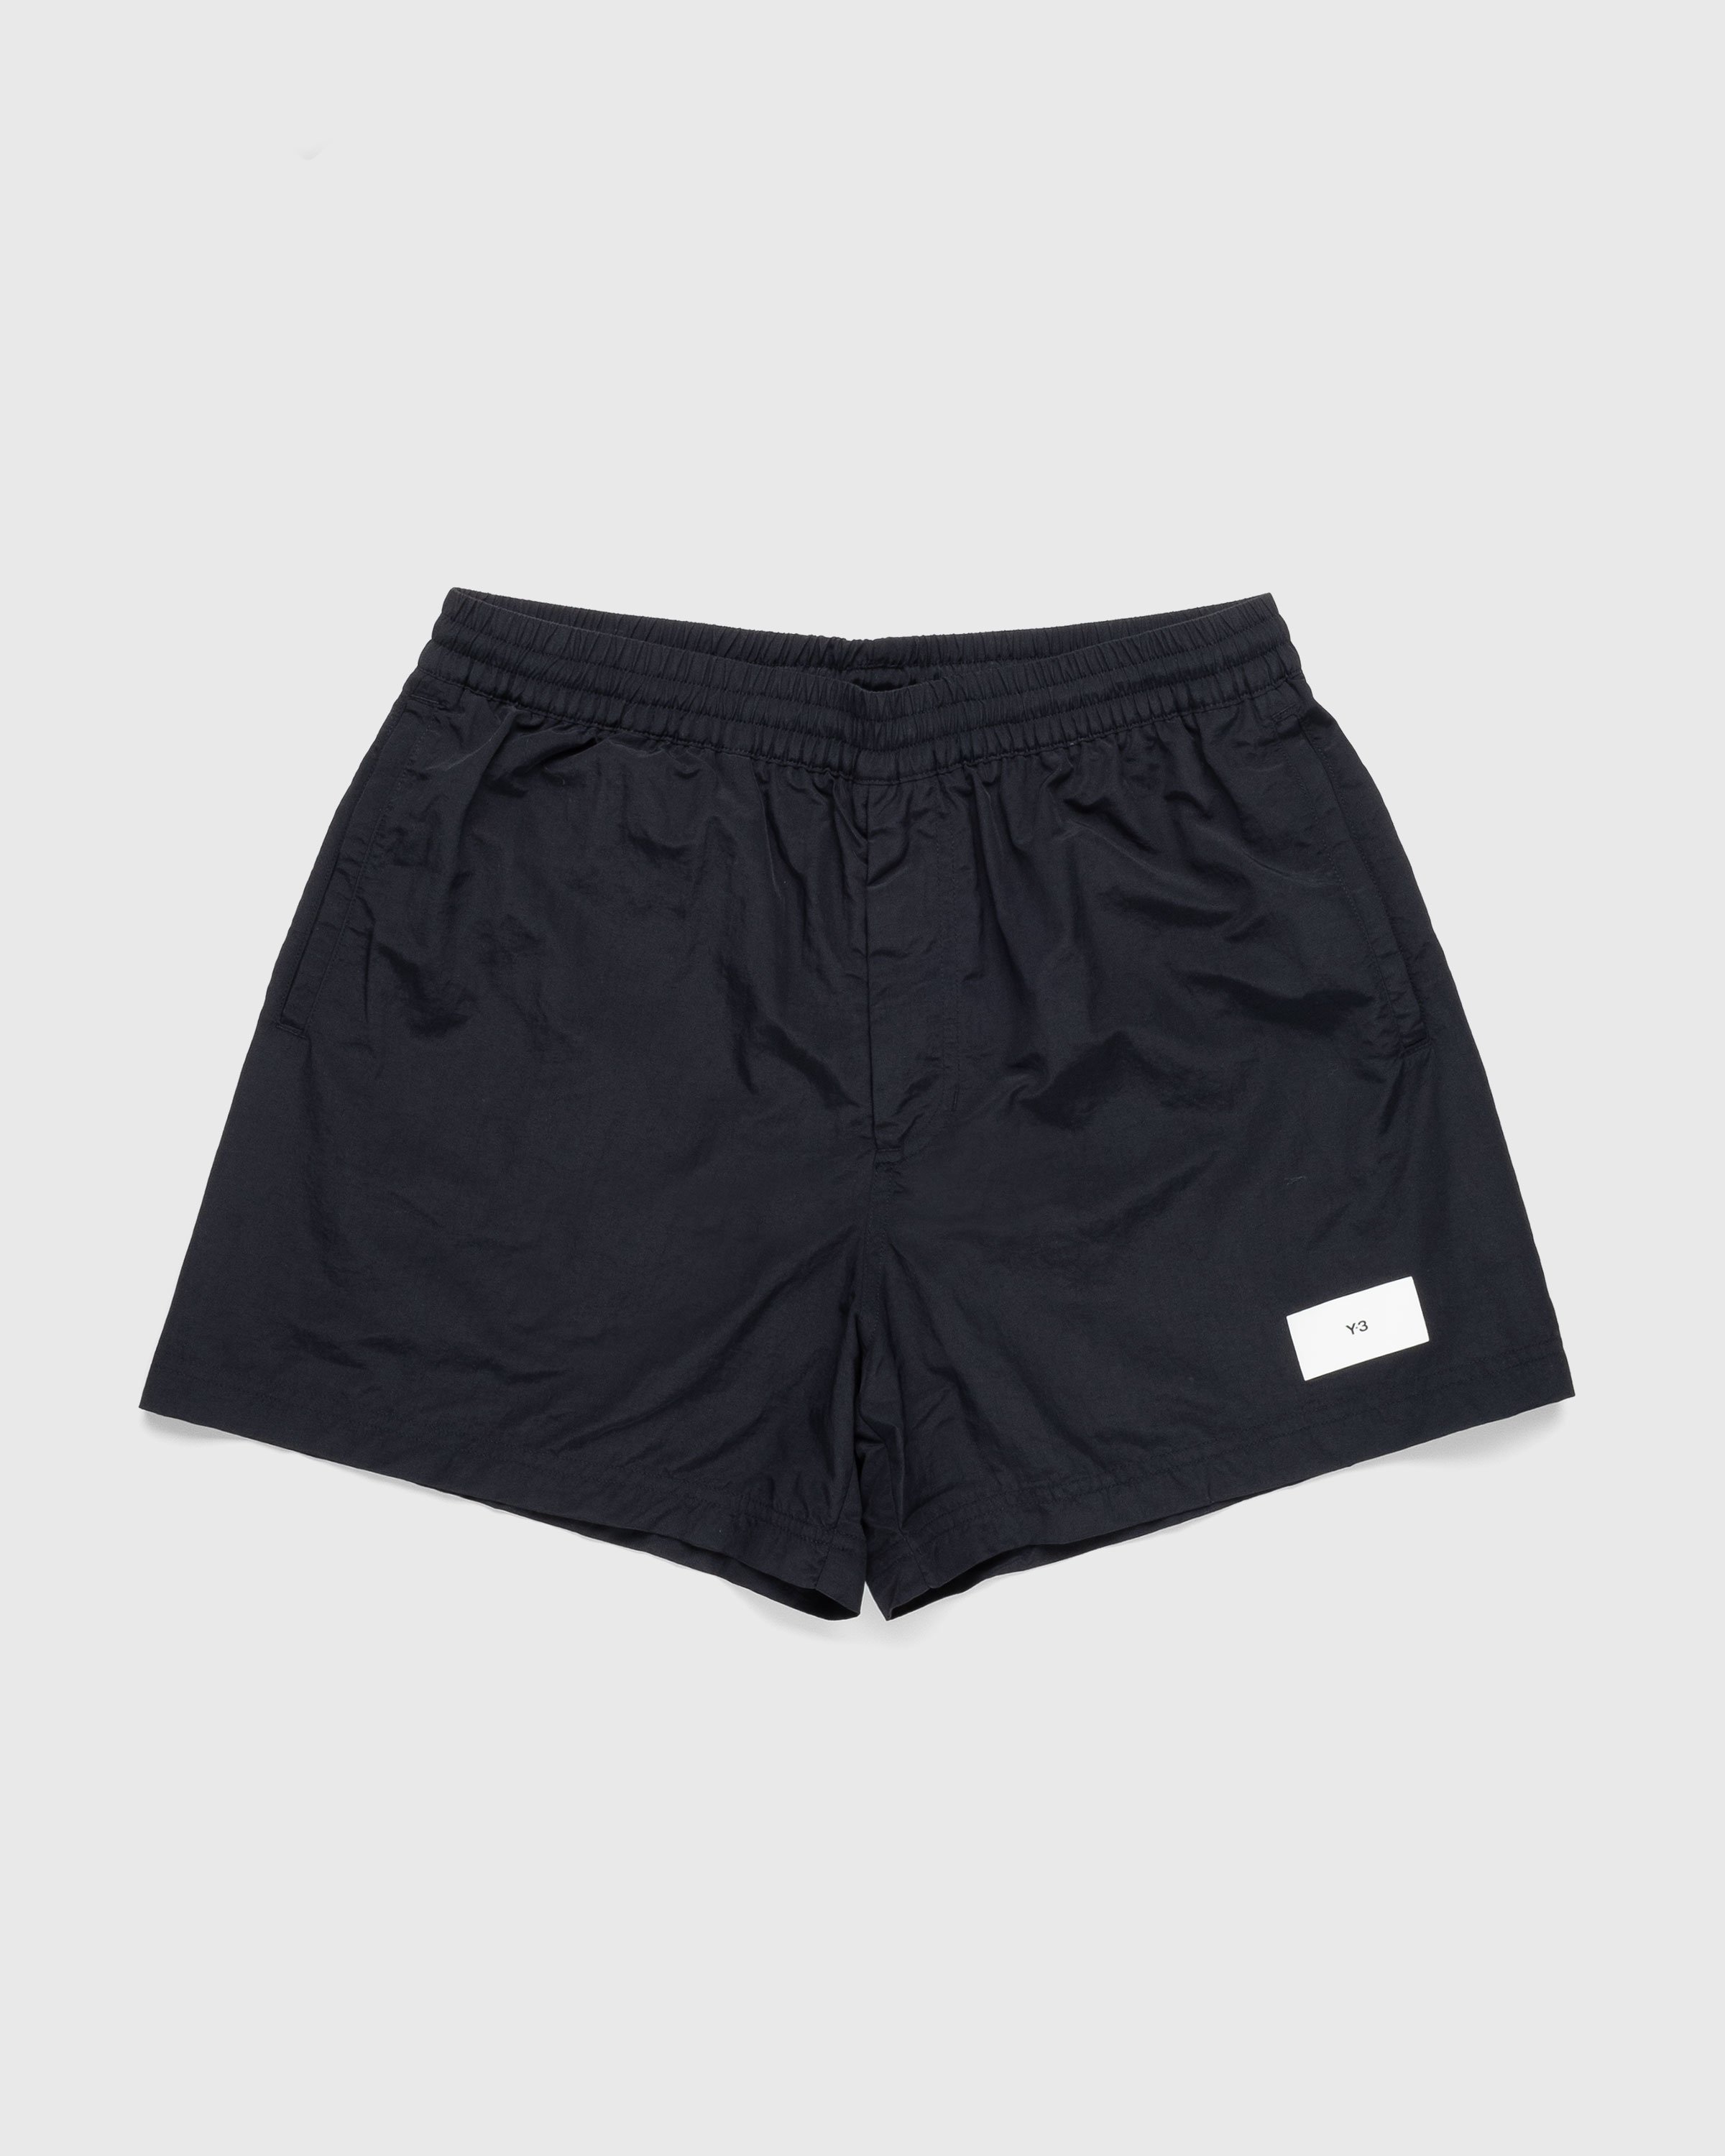 Y-3 - Swim Shorts Black - Clothing - Black - Image 1